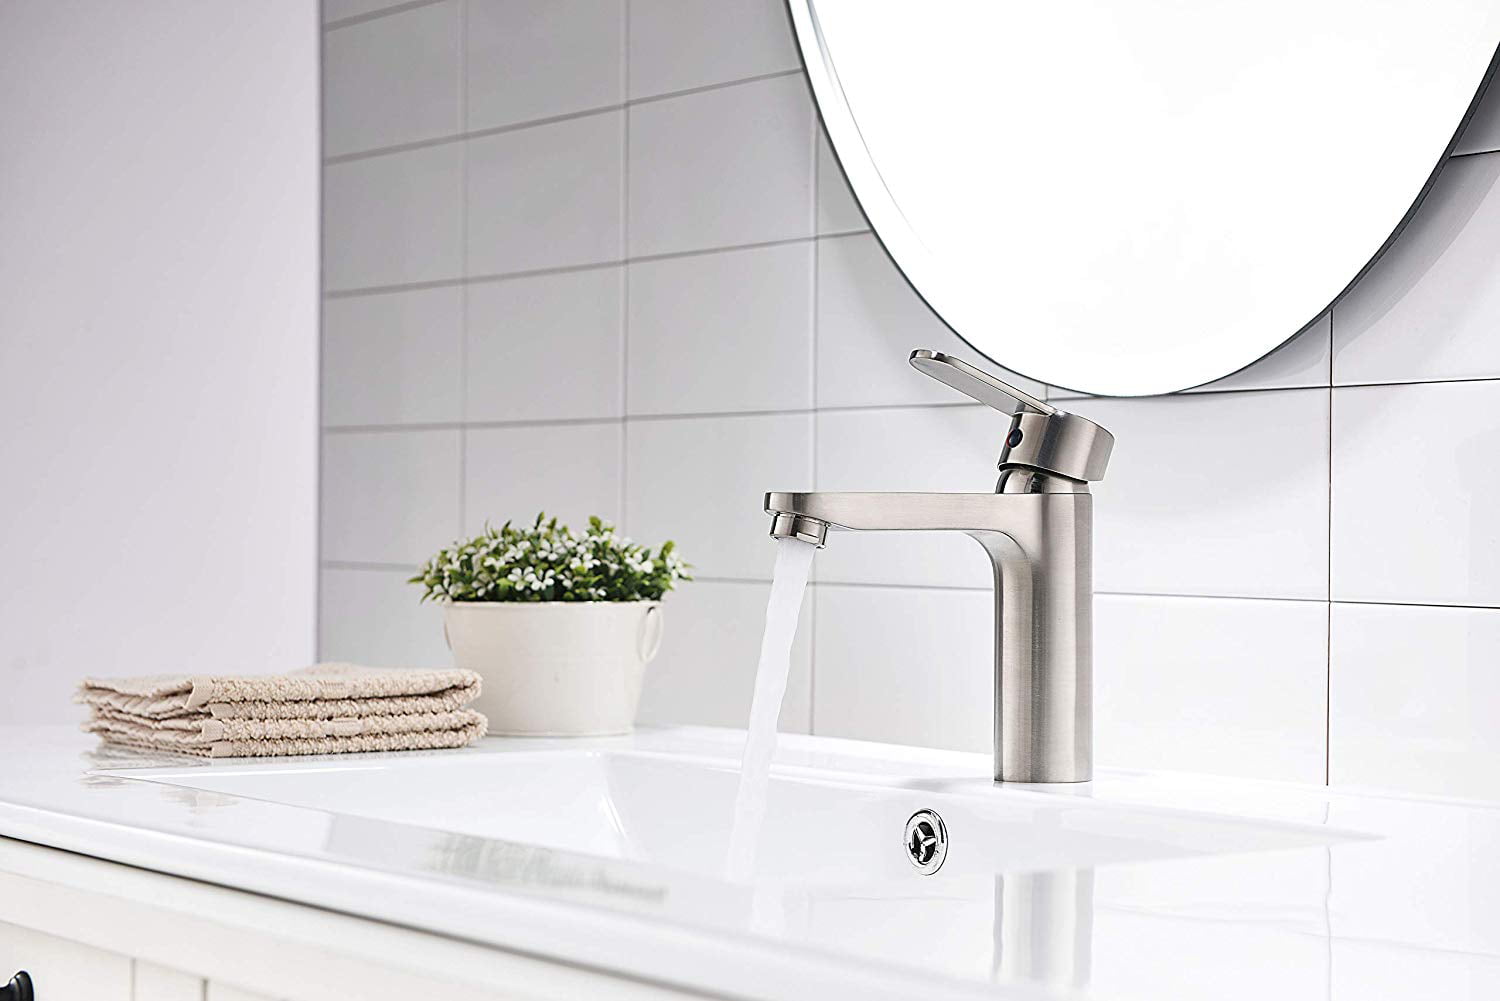 WELS Black Chrome 360° Swivel Kitchen Mixer Basin Sink Tap Laundry Faucet Spout 